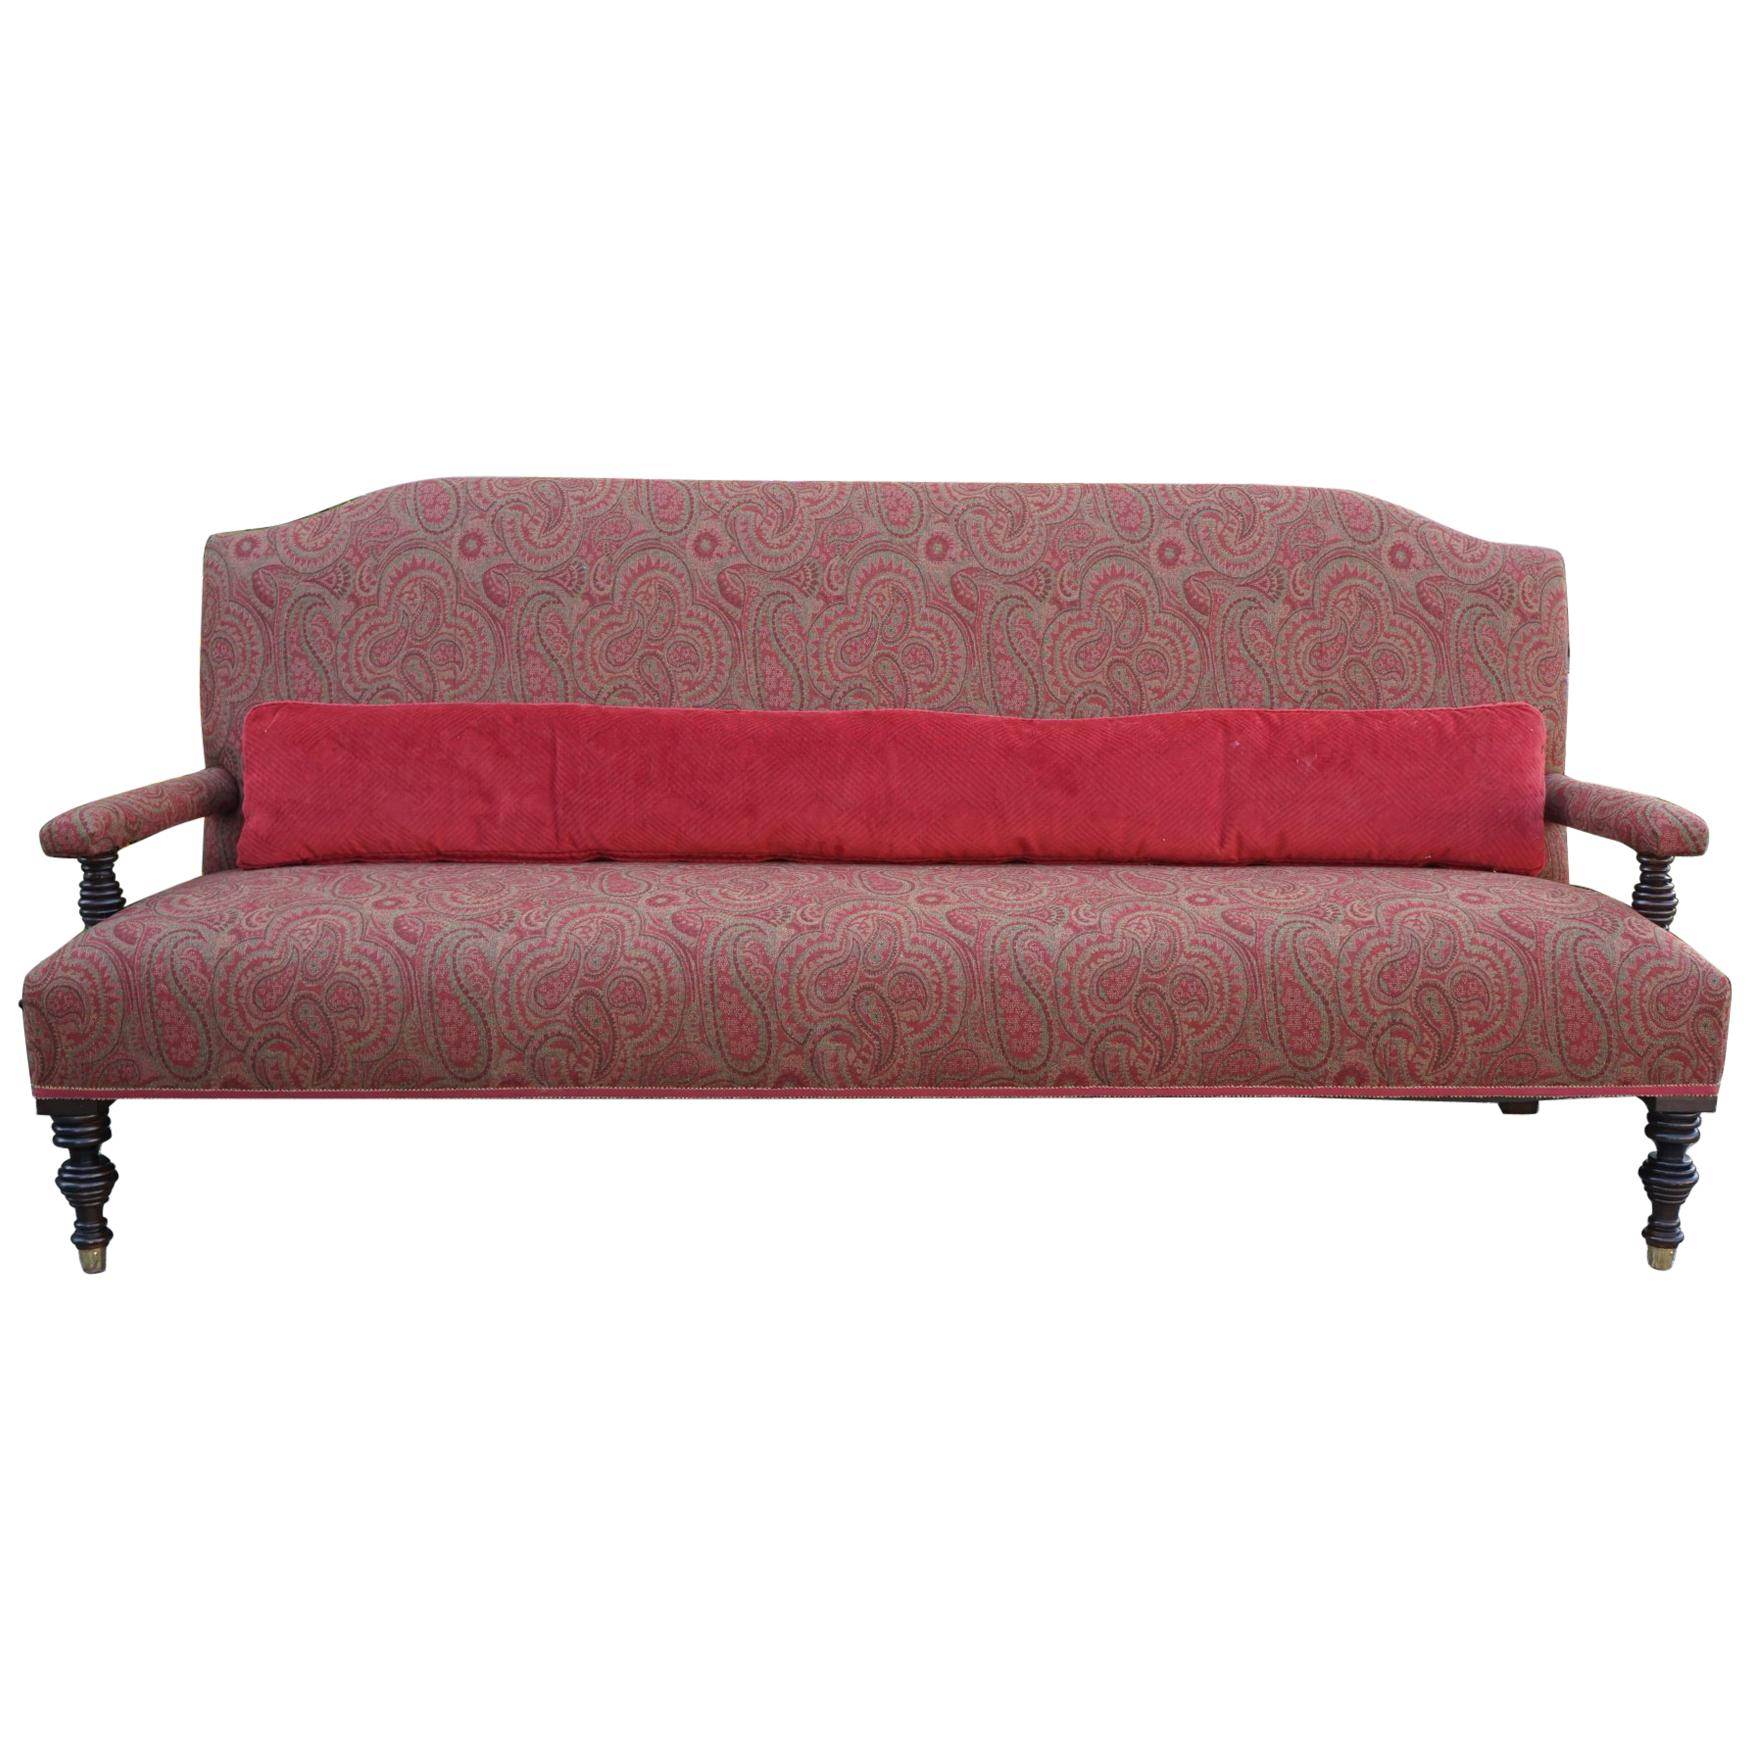 Vintage Edwardian Style Sofa